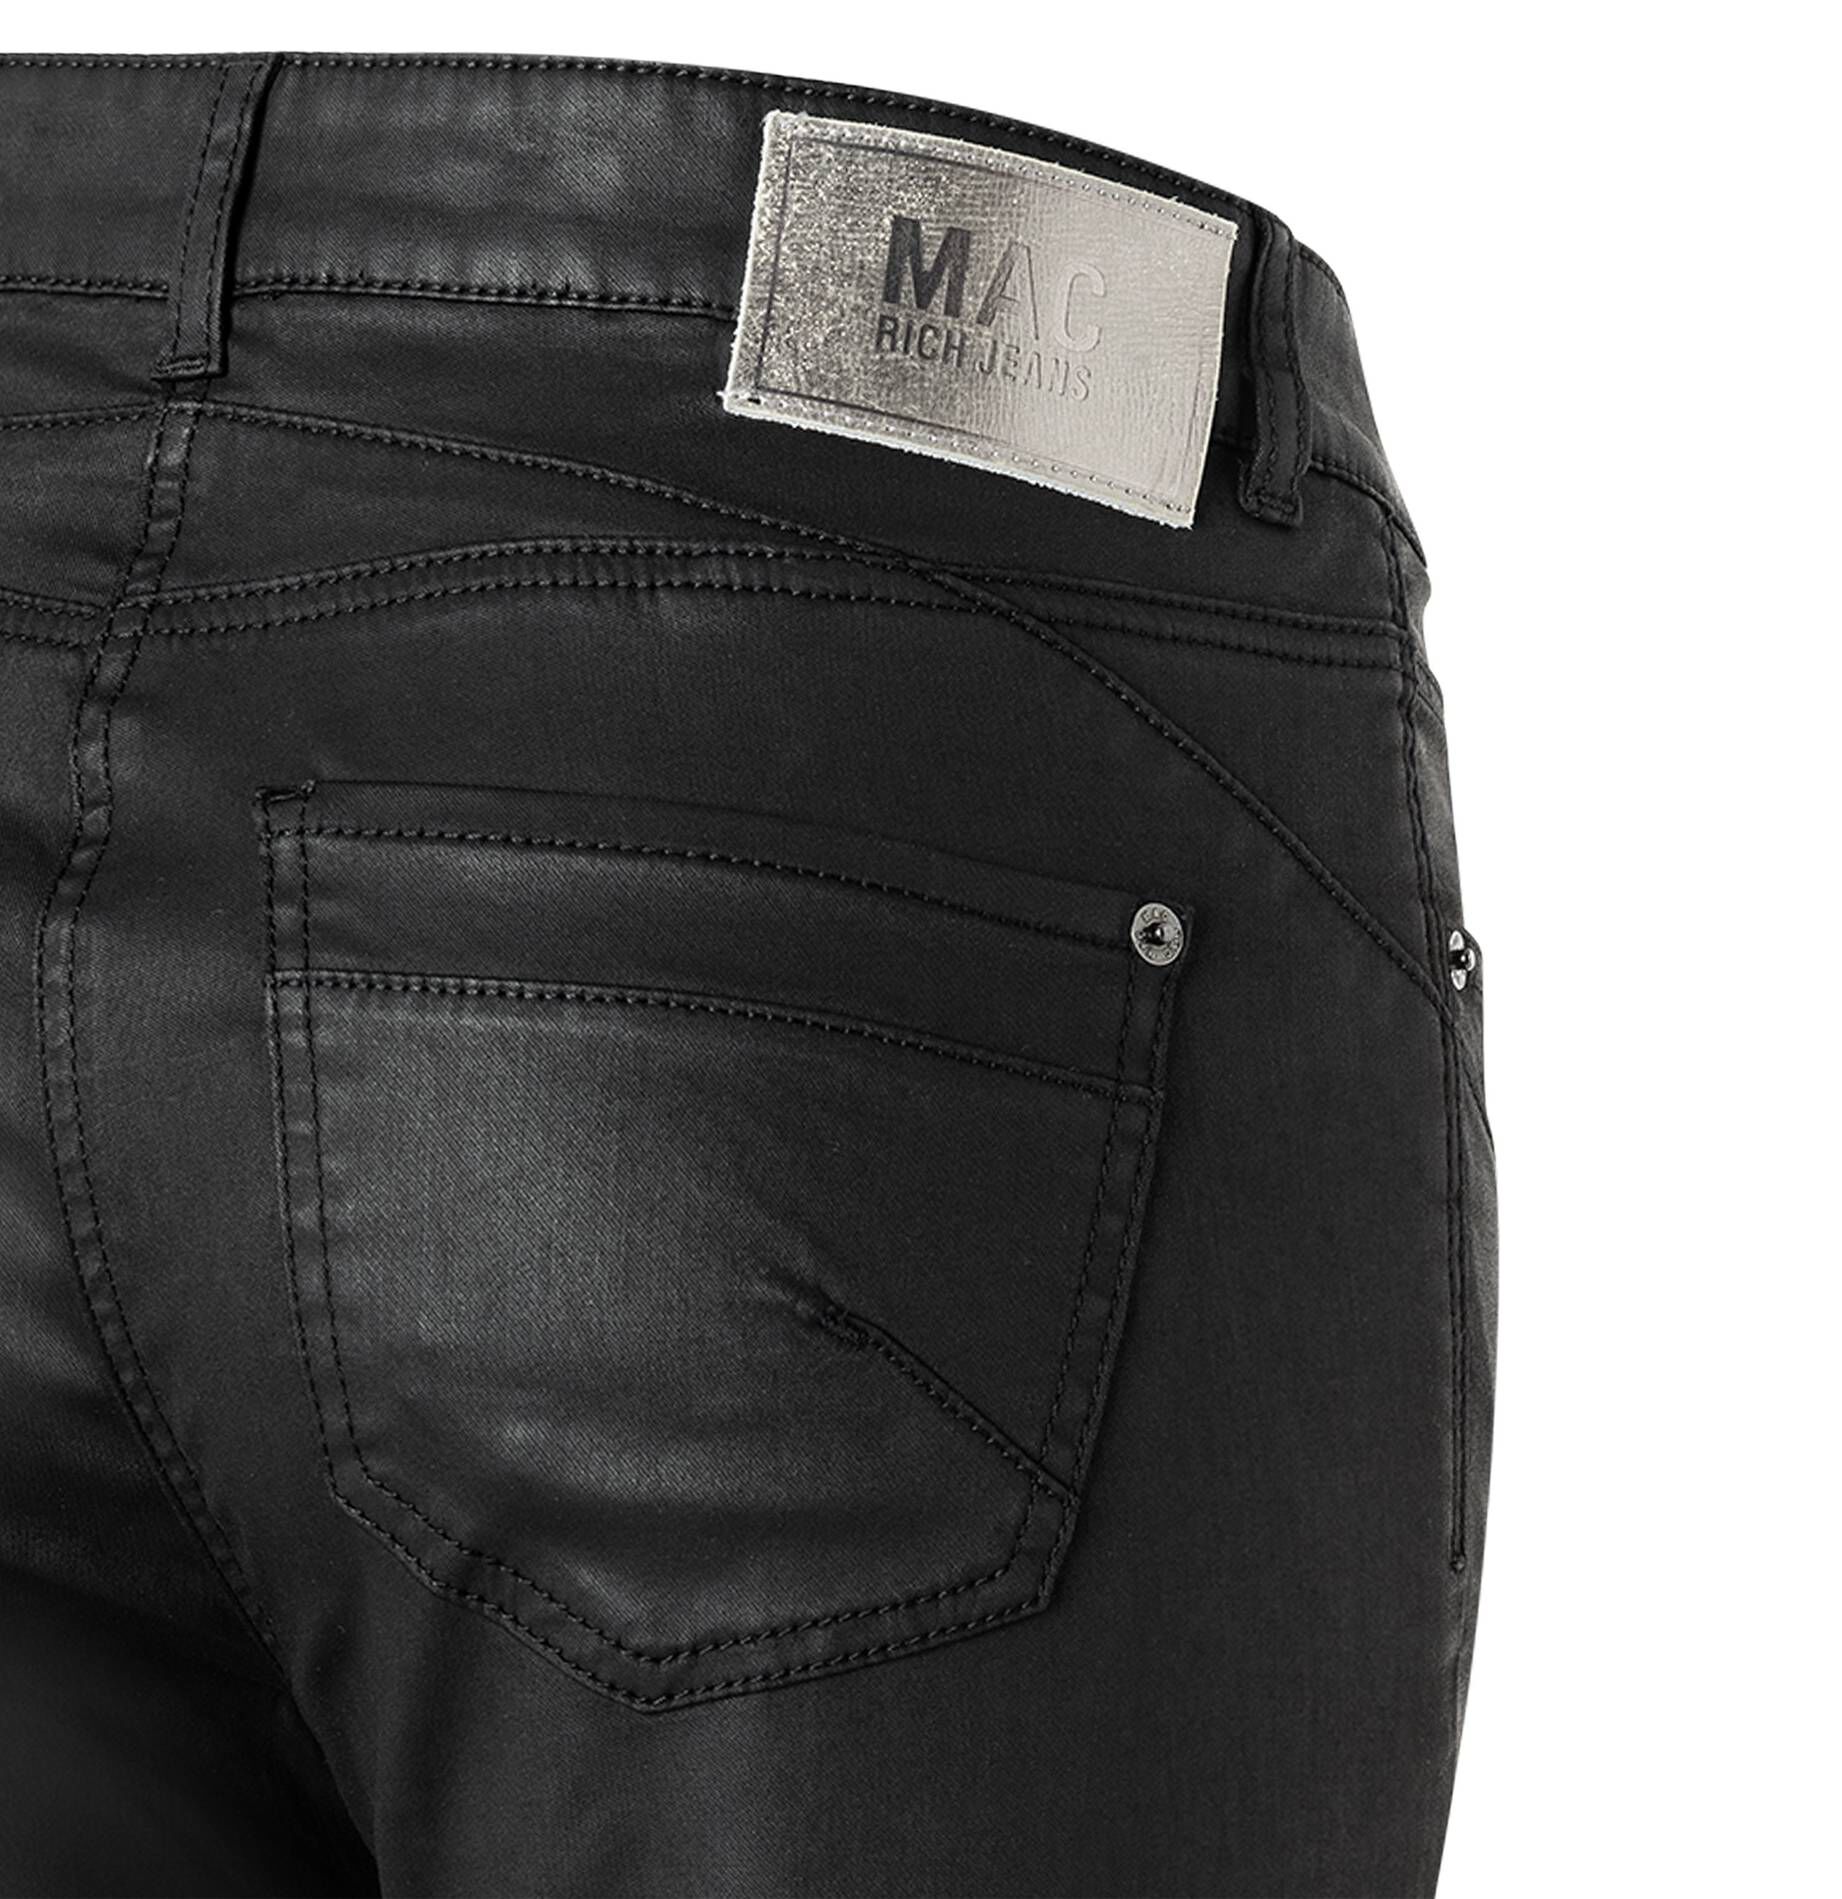 MAC Damen Jeans RICH SLIM Slim Fit kaufen | engelhorn